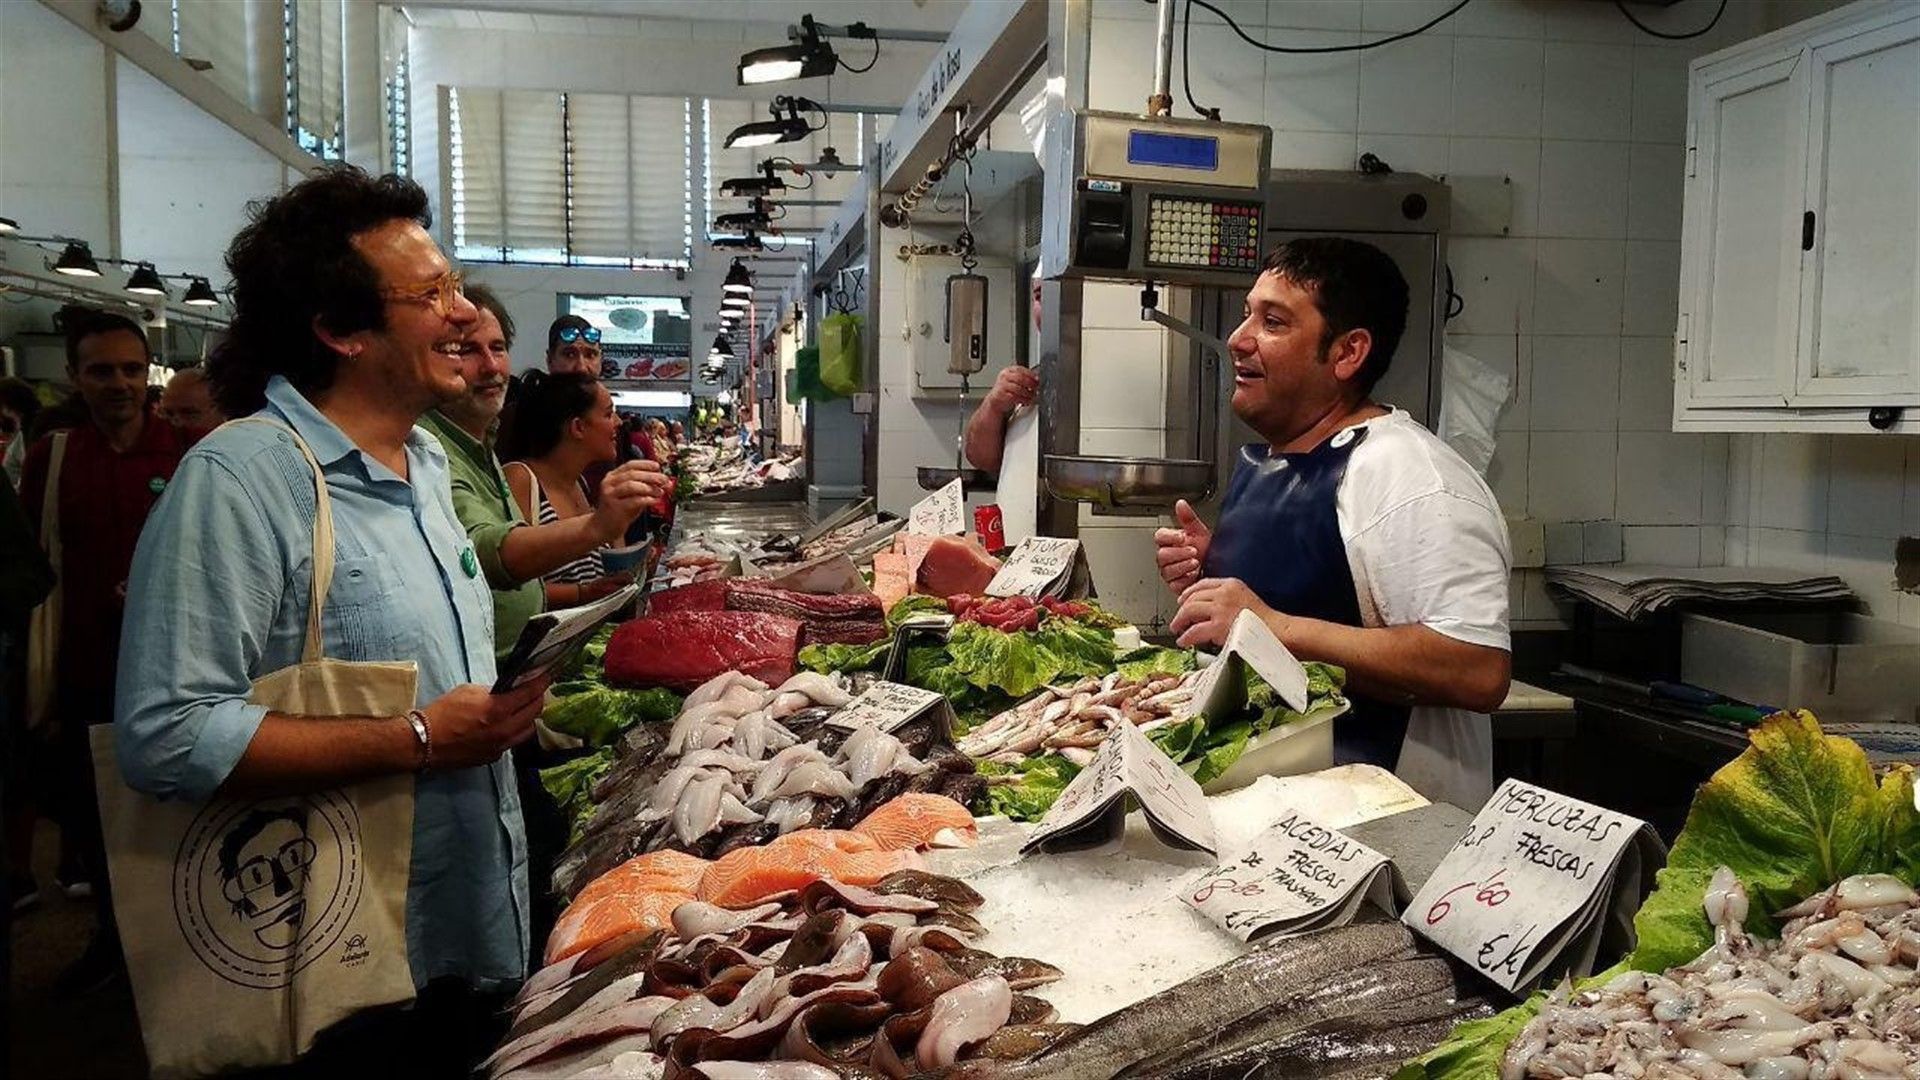 El alcalde de Cádiz y candidato de Adelante Cádiz comprando en una pescadería. Foto: Europapress.